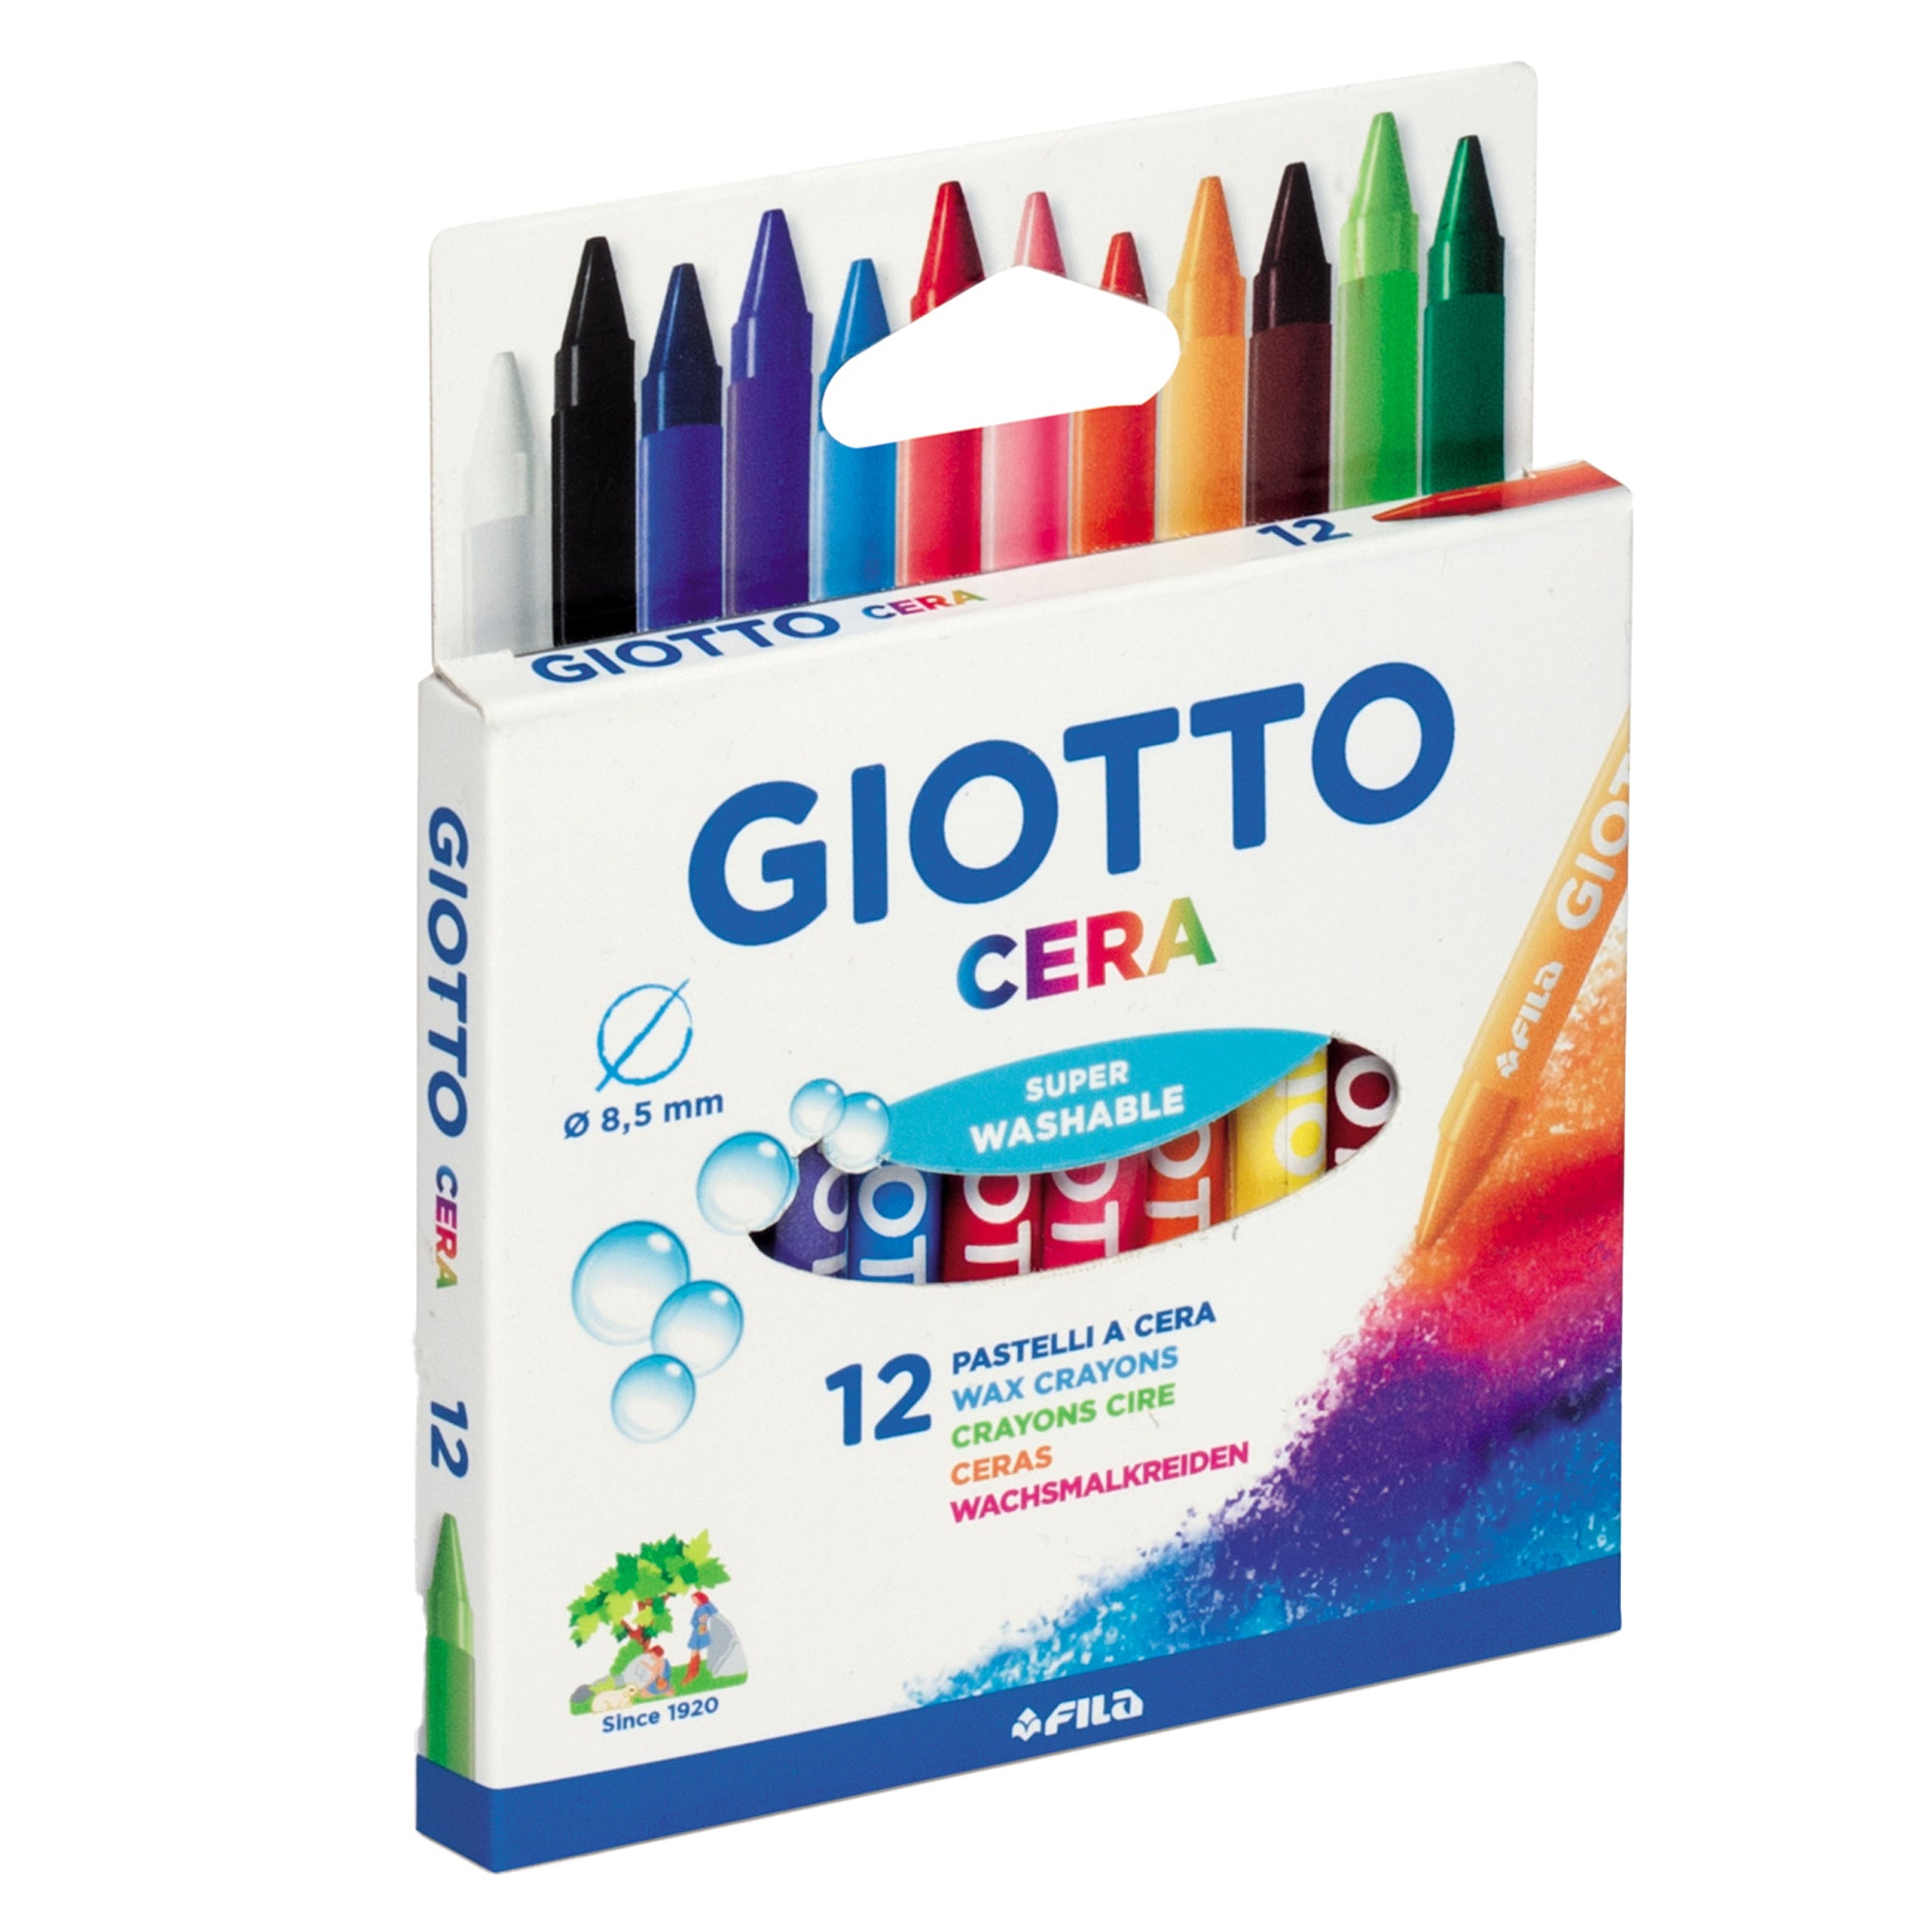 giotto-astuccio-12-pastelli-cera-90mm-d-8-5mm